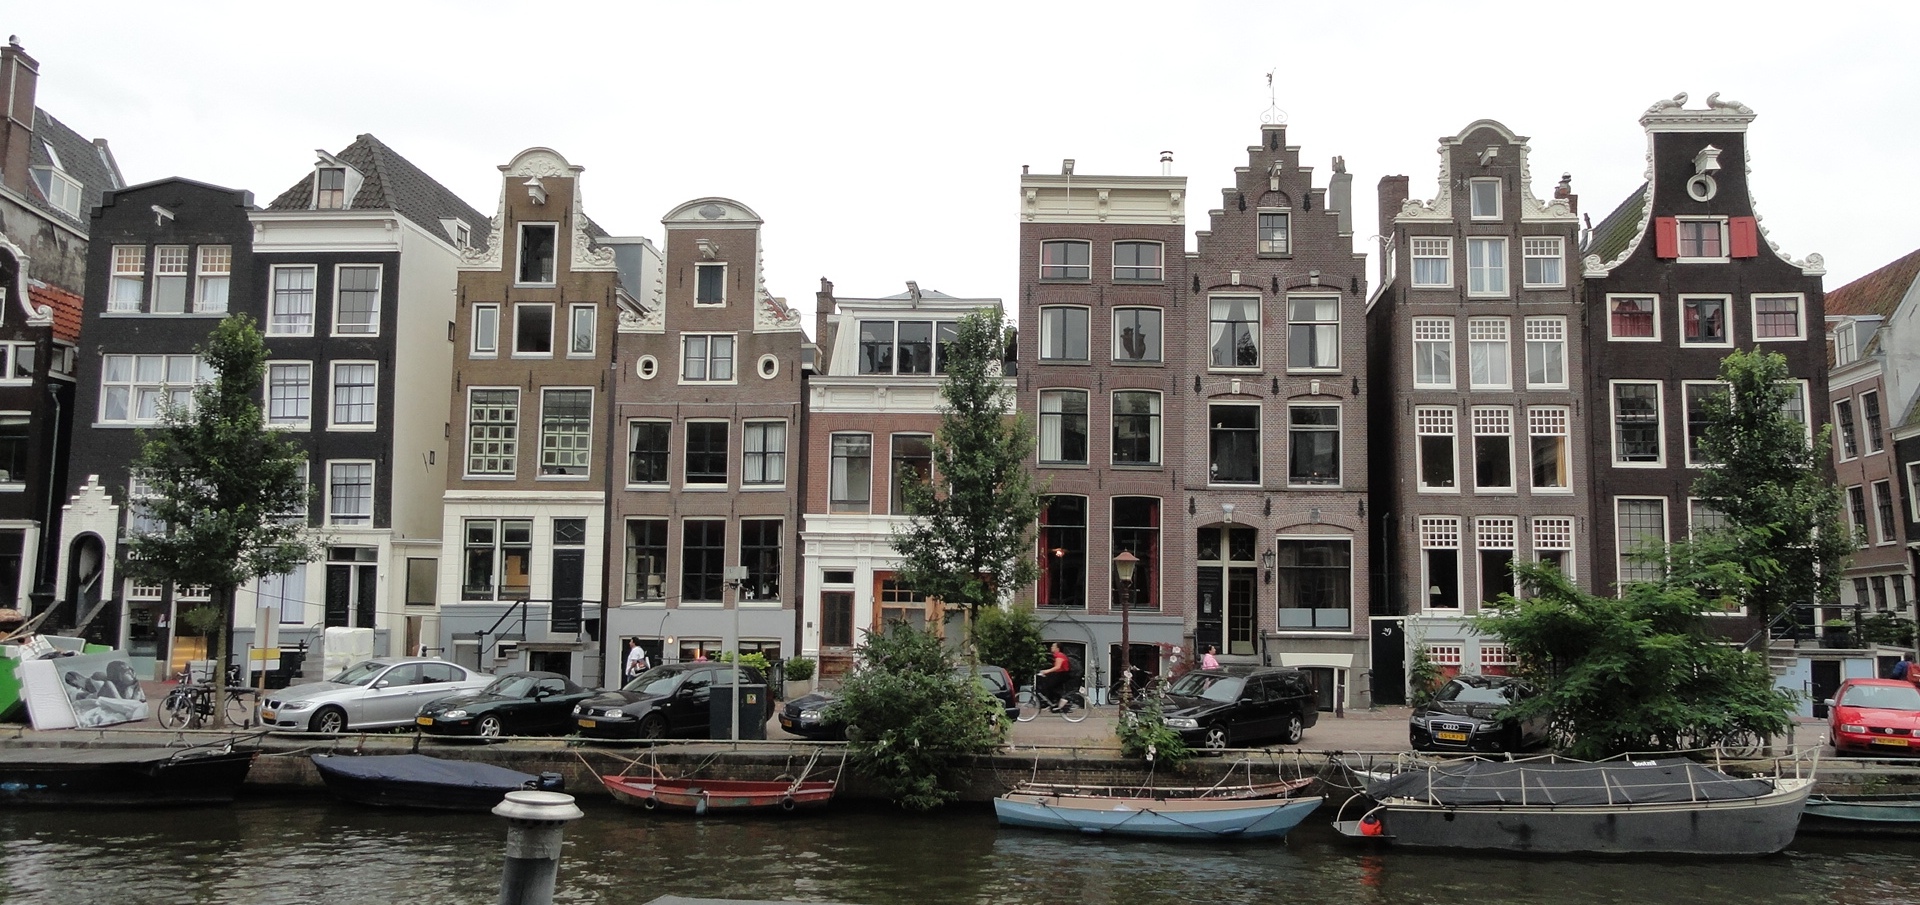 Amsterdam - Maisons et Canaux  